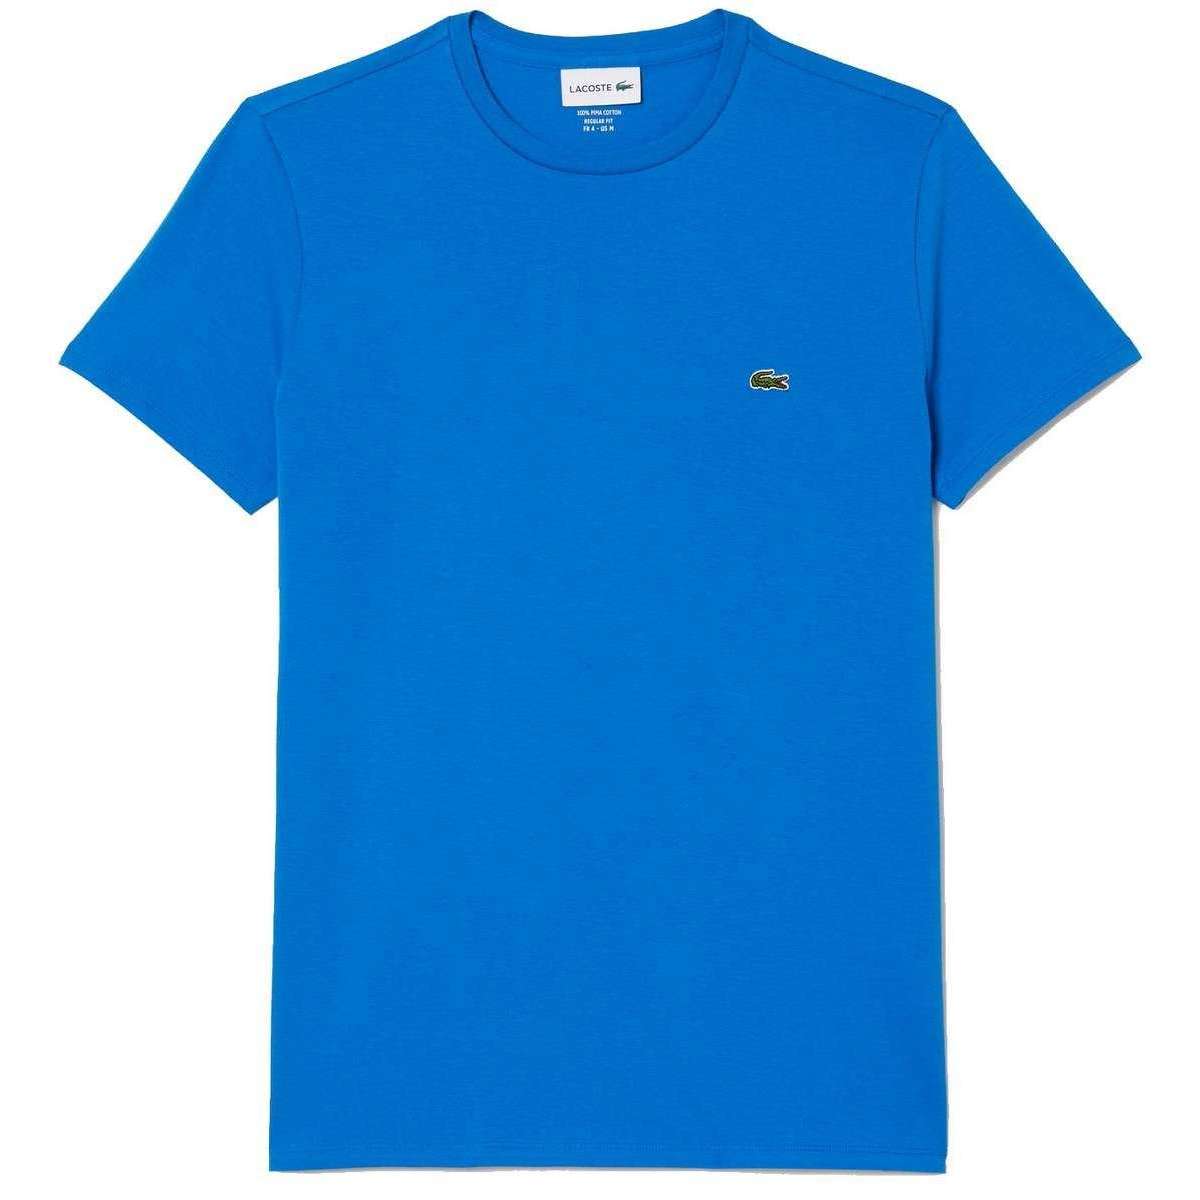 Lacoste Classic Pima Cotton T-Shirt - Hilo Blue